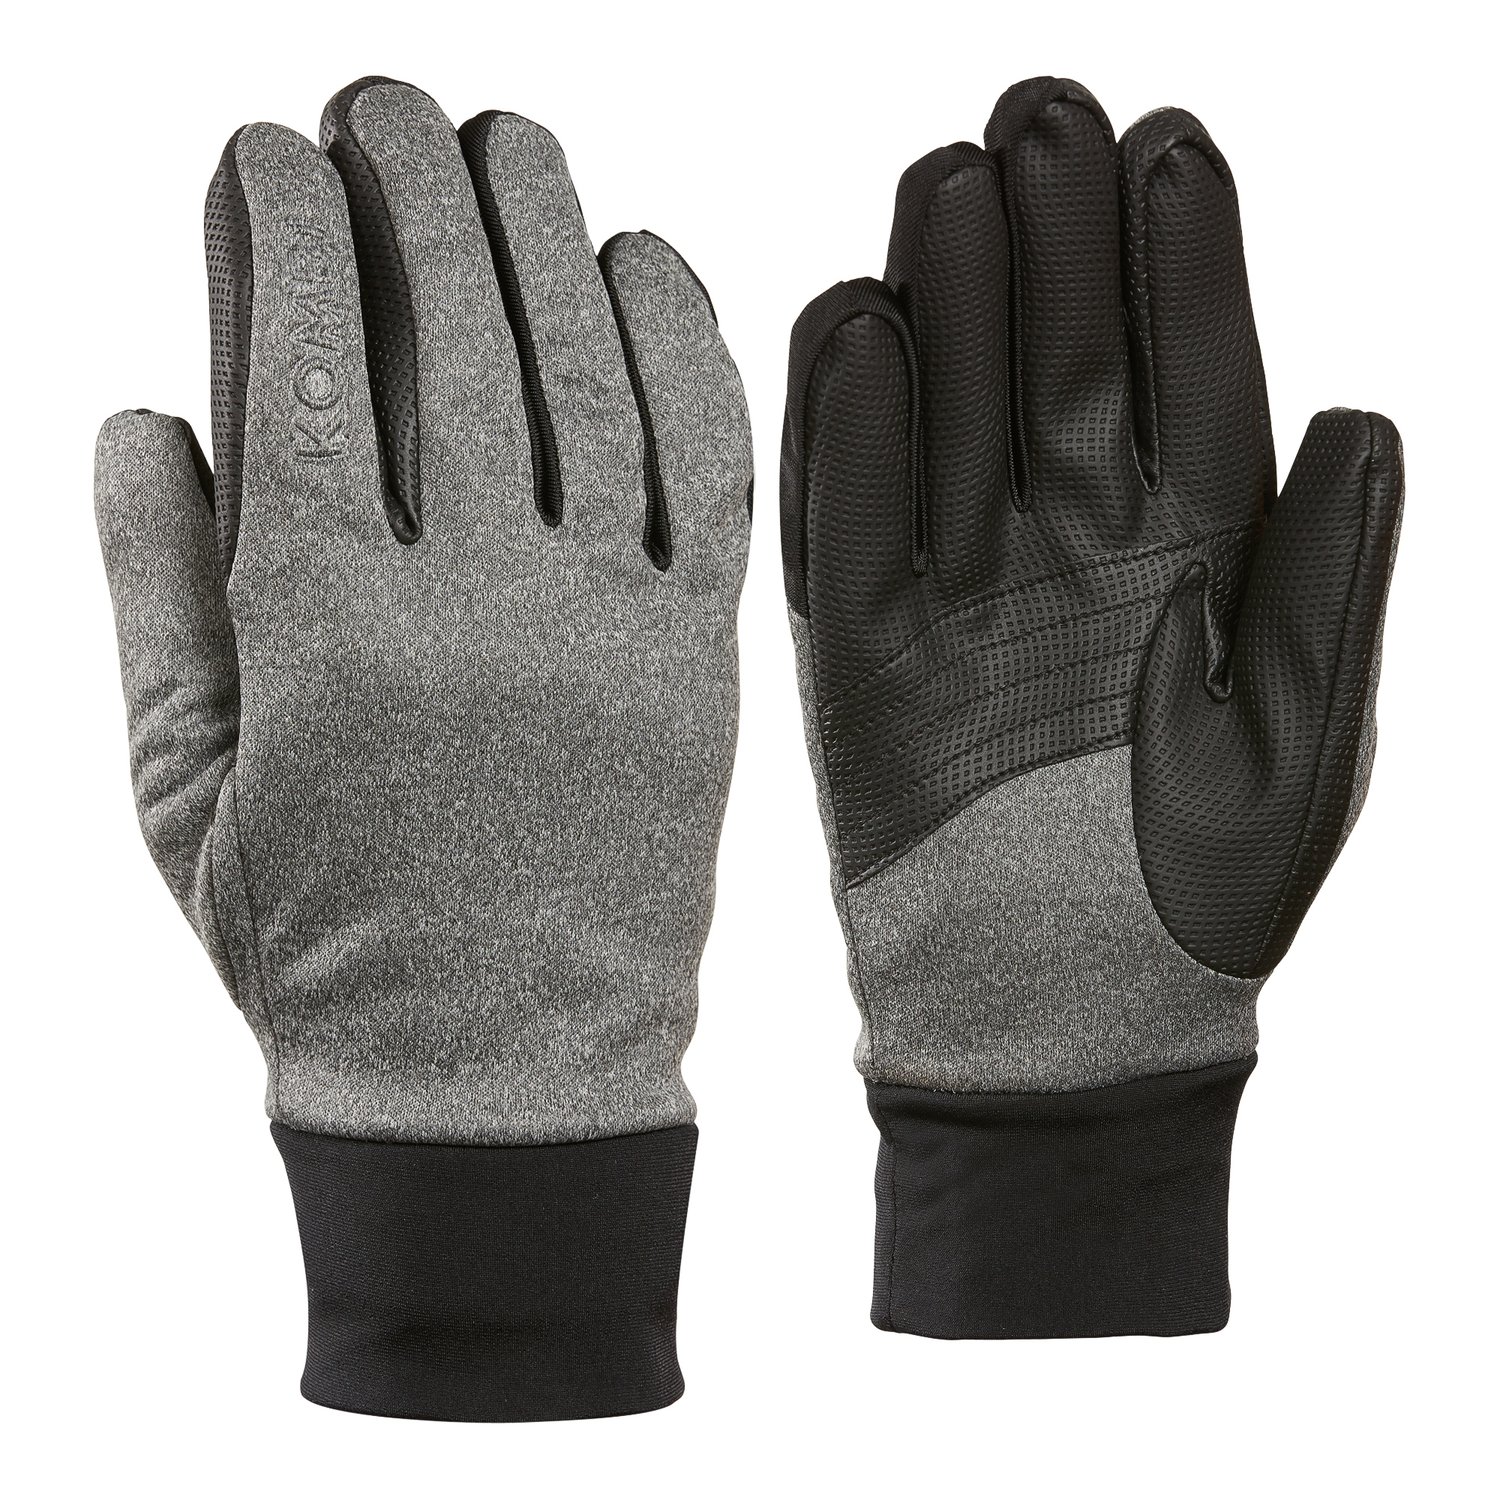 Women’s Winter Multi-Tasker Gloves HEATHER GREY